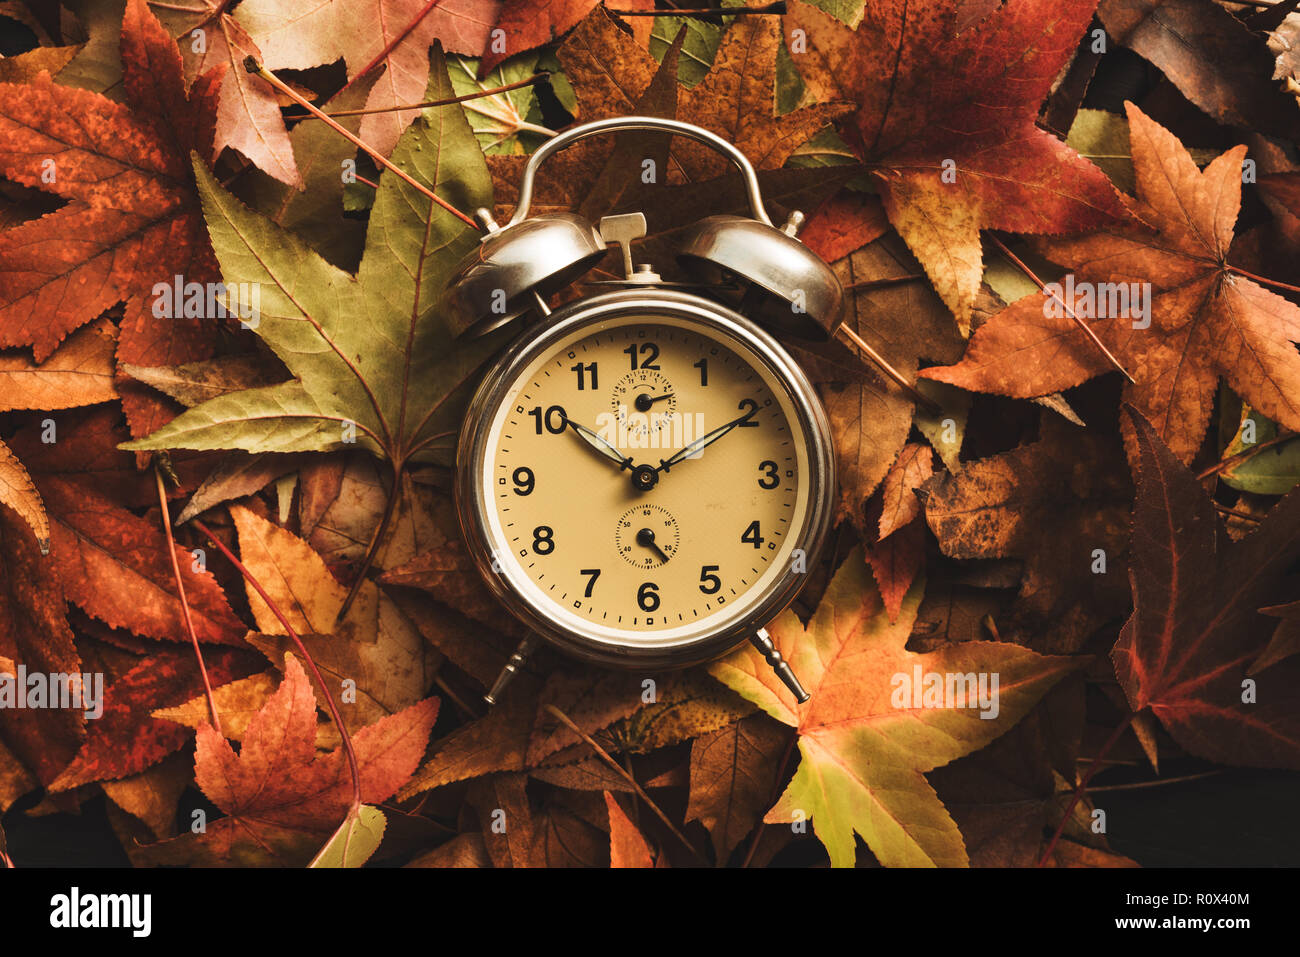 La saison d'automne, temps retro vintage réveil dans les feuilles d'automne - concept de l'heure d'été Banque D'Images